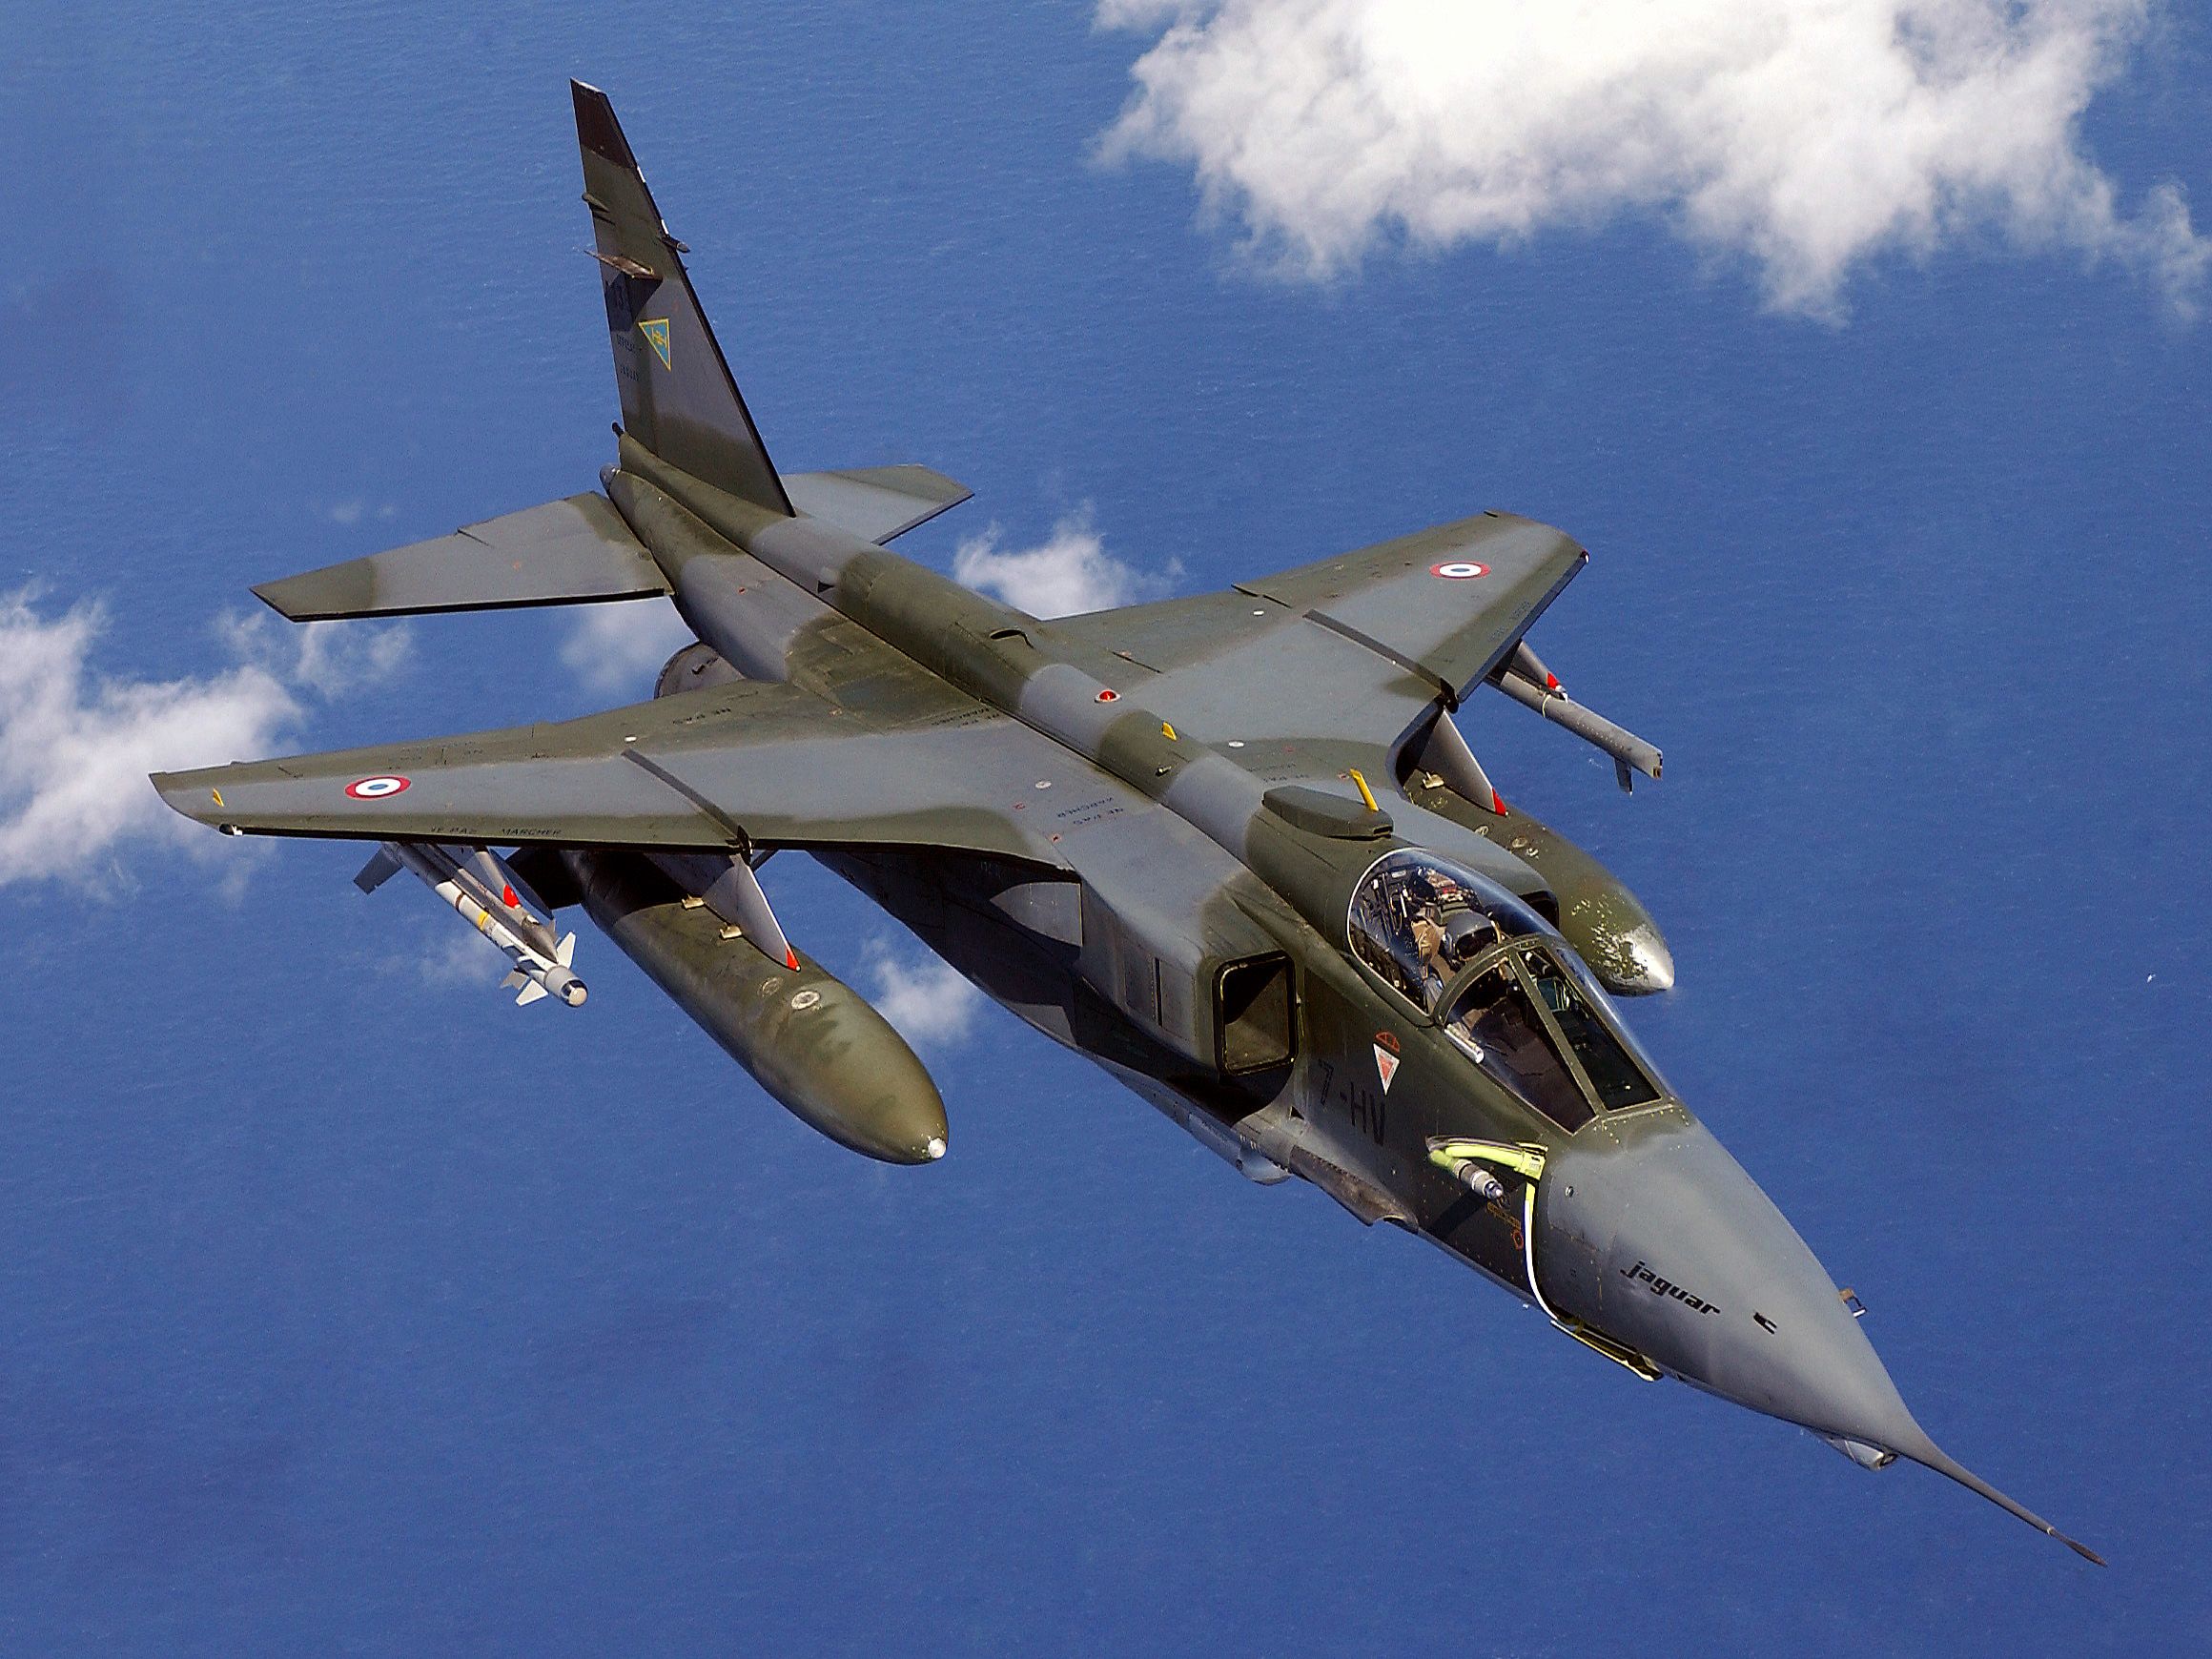 French Air Force SEPECAT Jaguar Attack